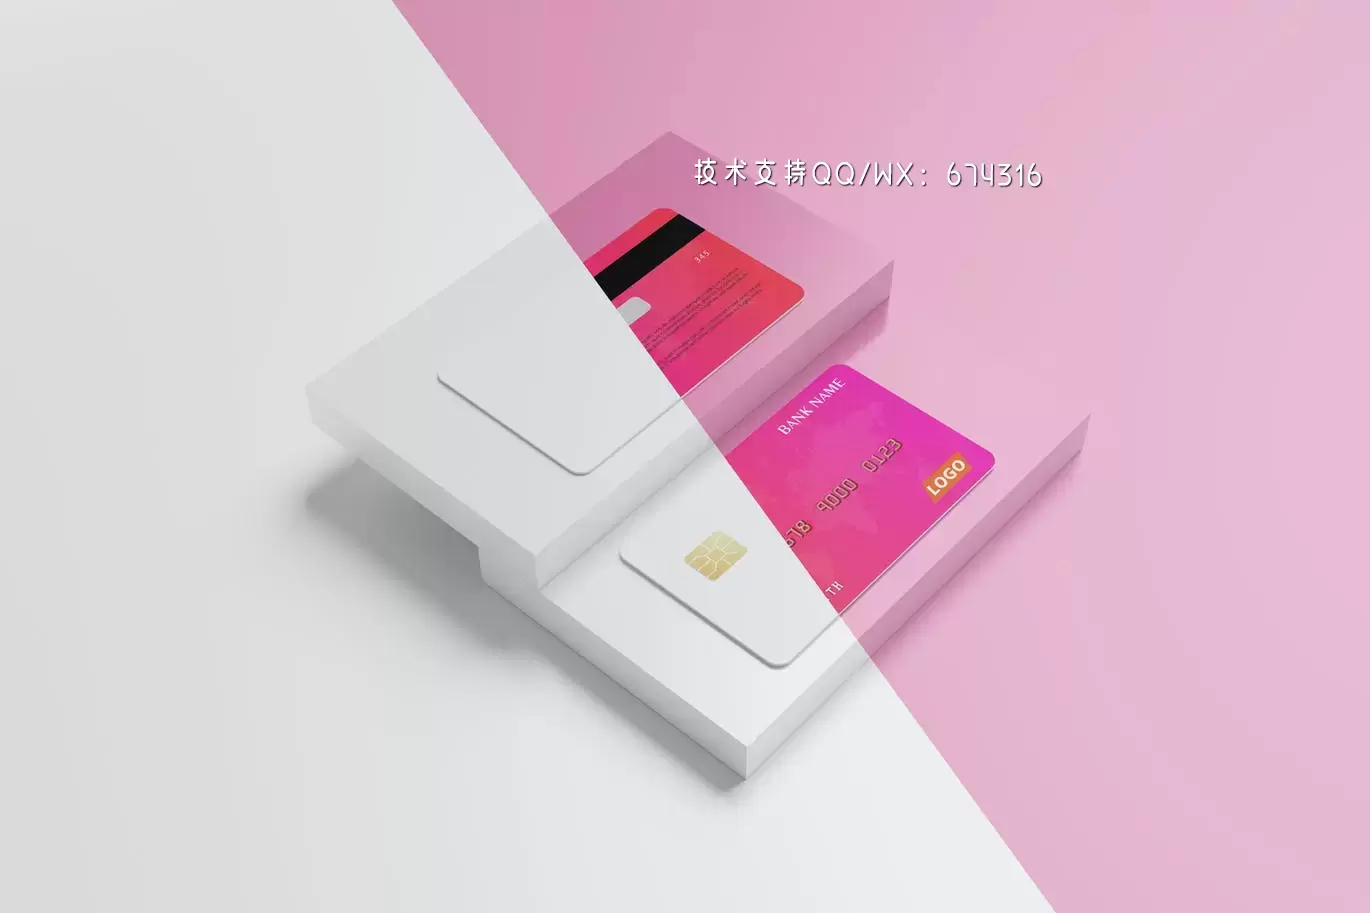 高端信用卡设计样机(PSD)免费下载